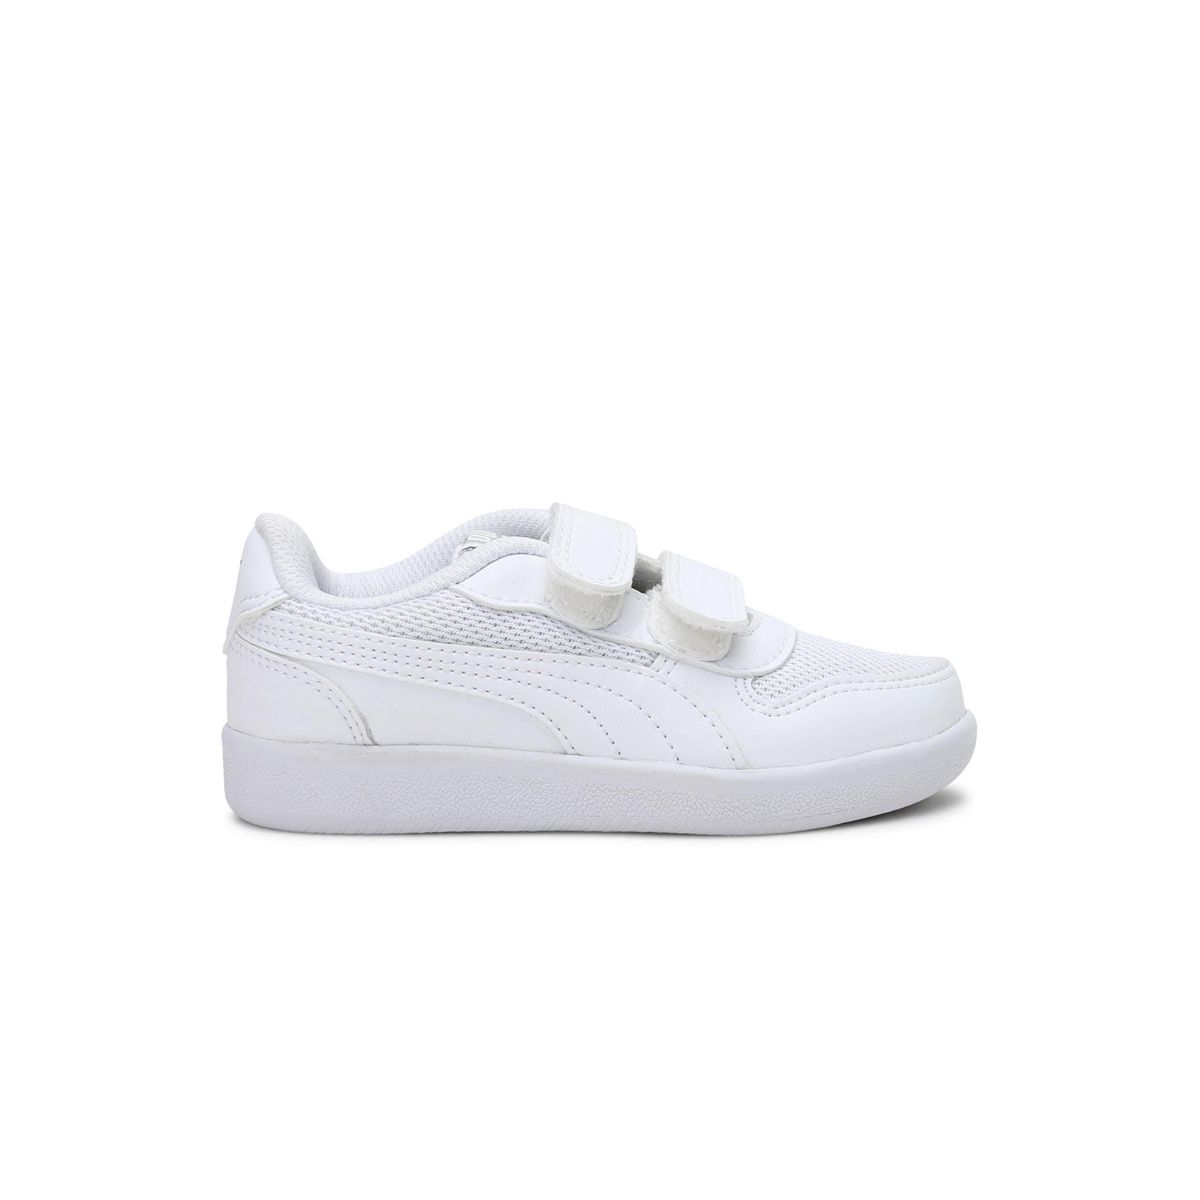 Puma Kent 2.0 IDP Unisex Unisex White Casual Shoes (3-4 Years): Buy ...